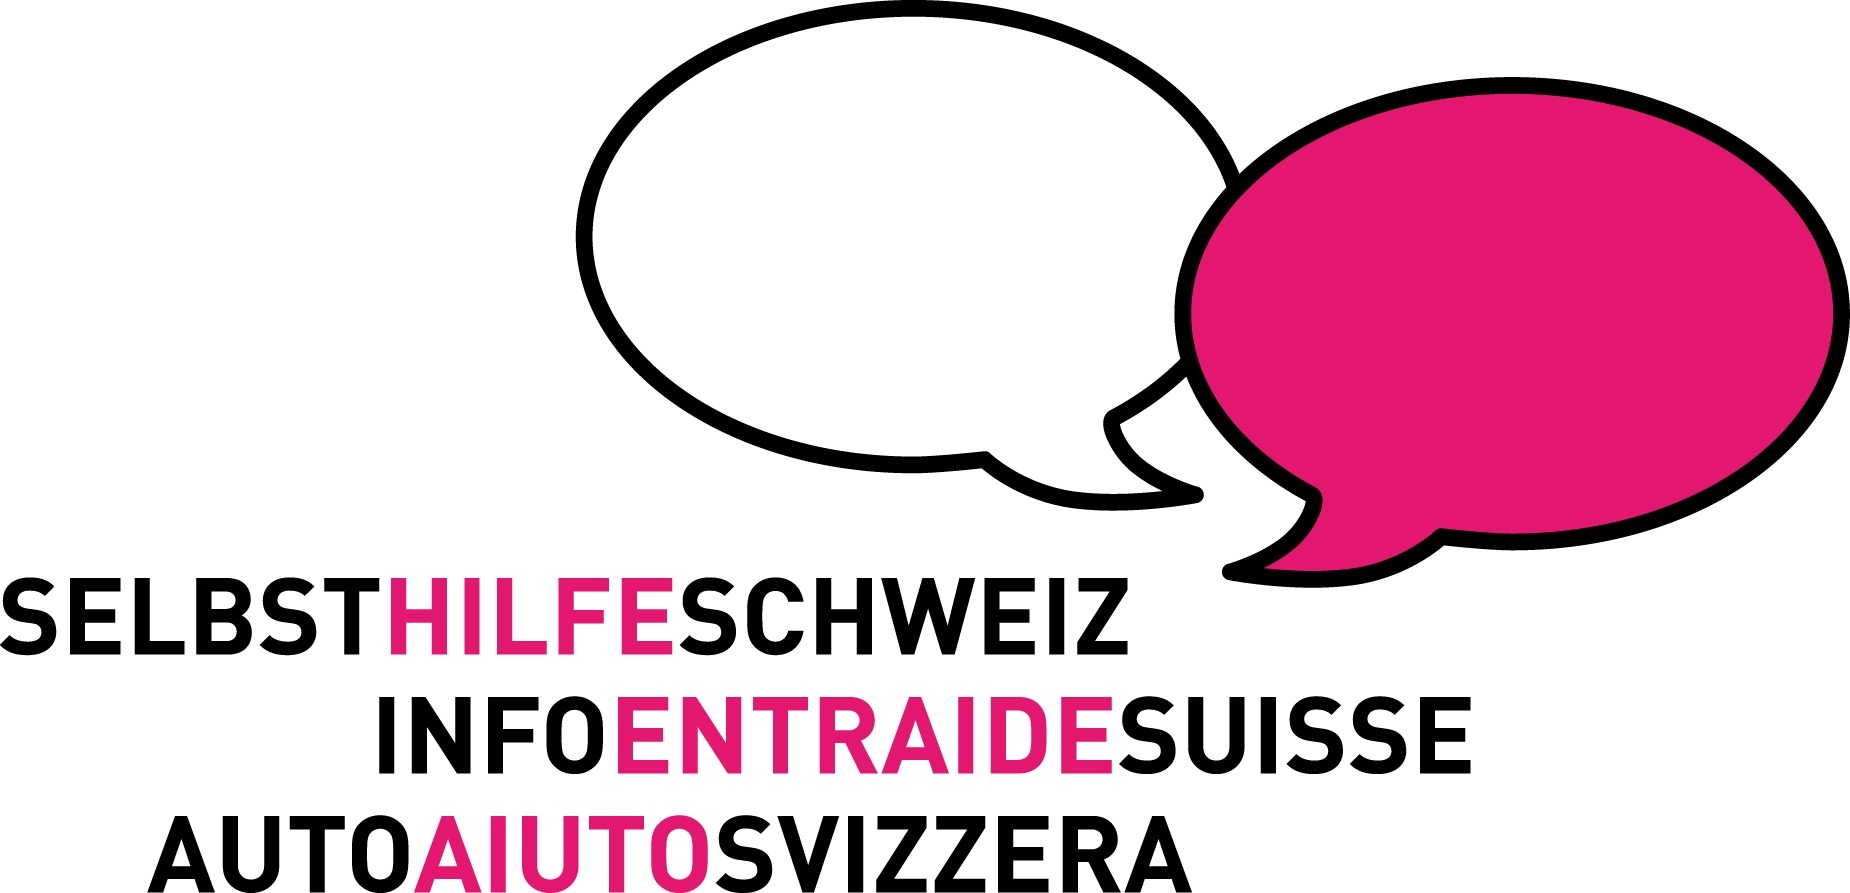 Info-Entraide Suisse